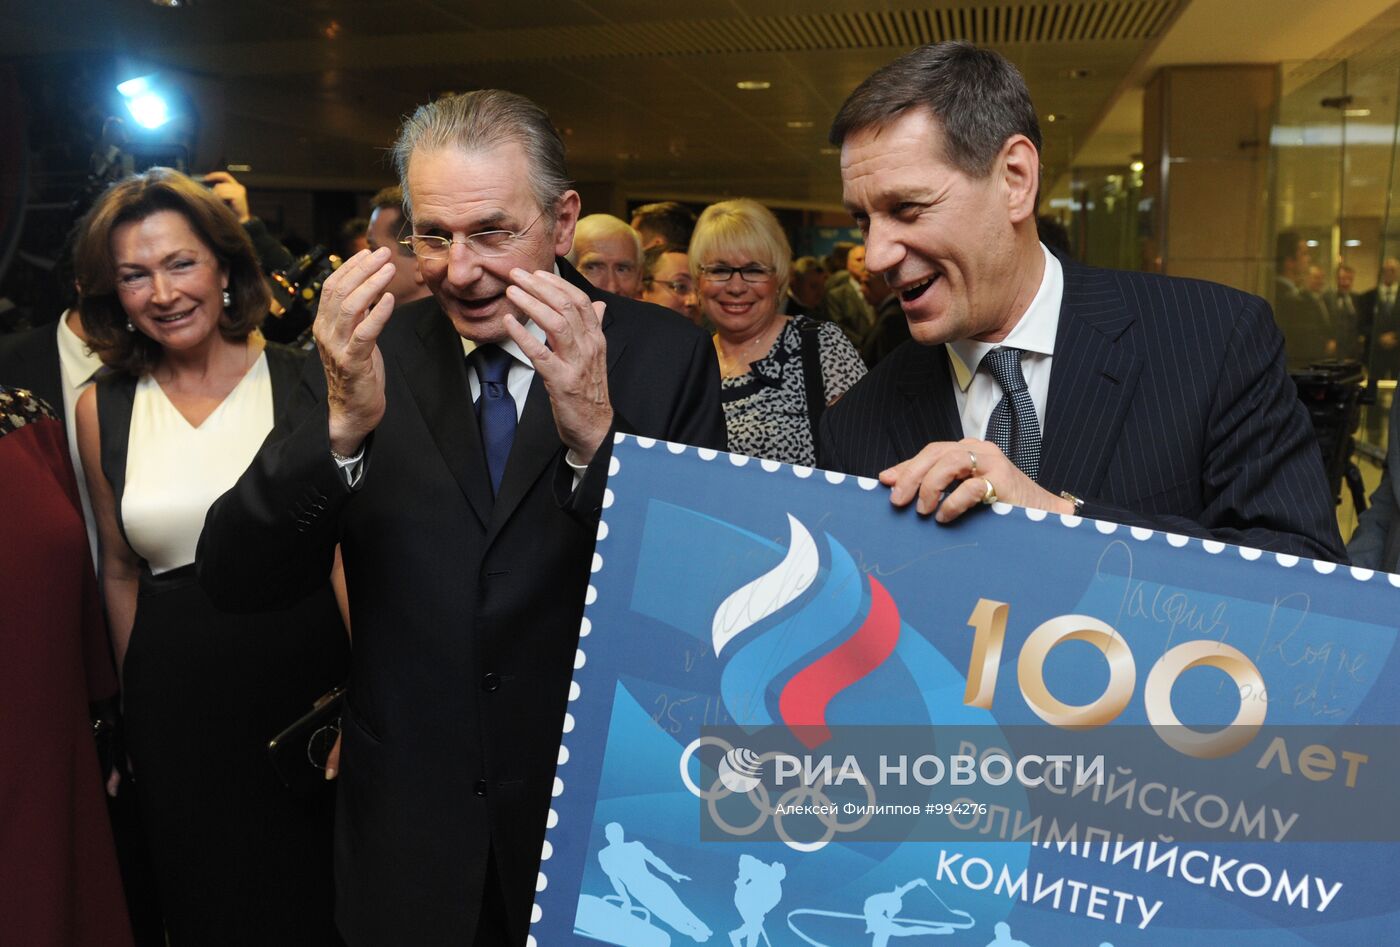 Бал олимпийцев, посвященный 100-летию ОКР